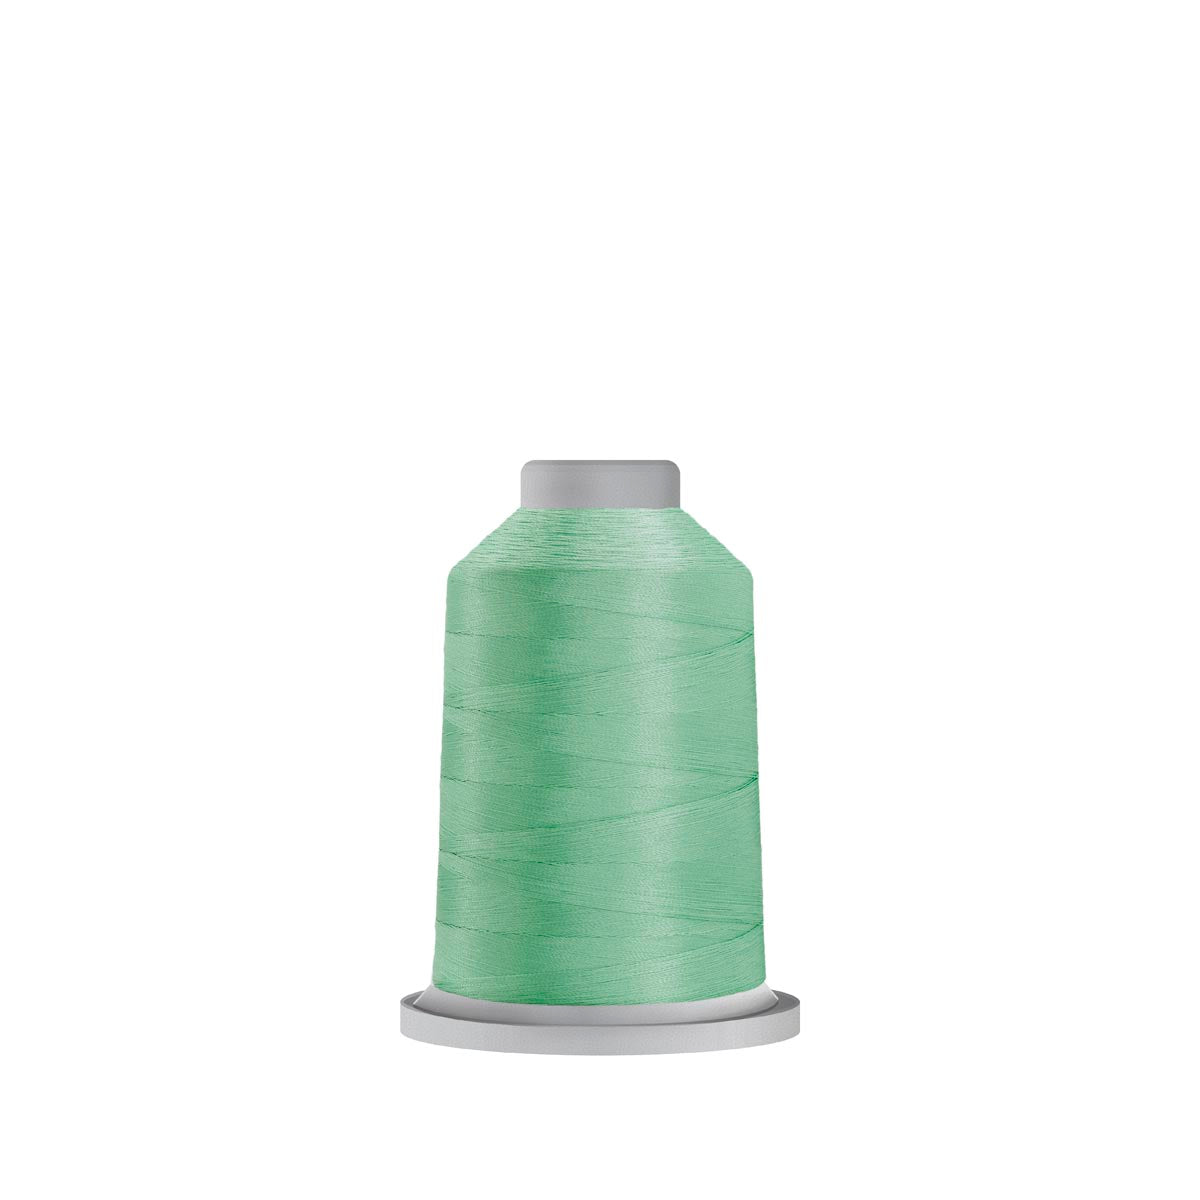 60345 Mint Glide Polyester Thread - 1,100 yards Mini Spool Fil-Tec